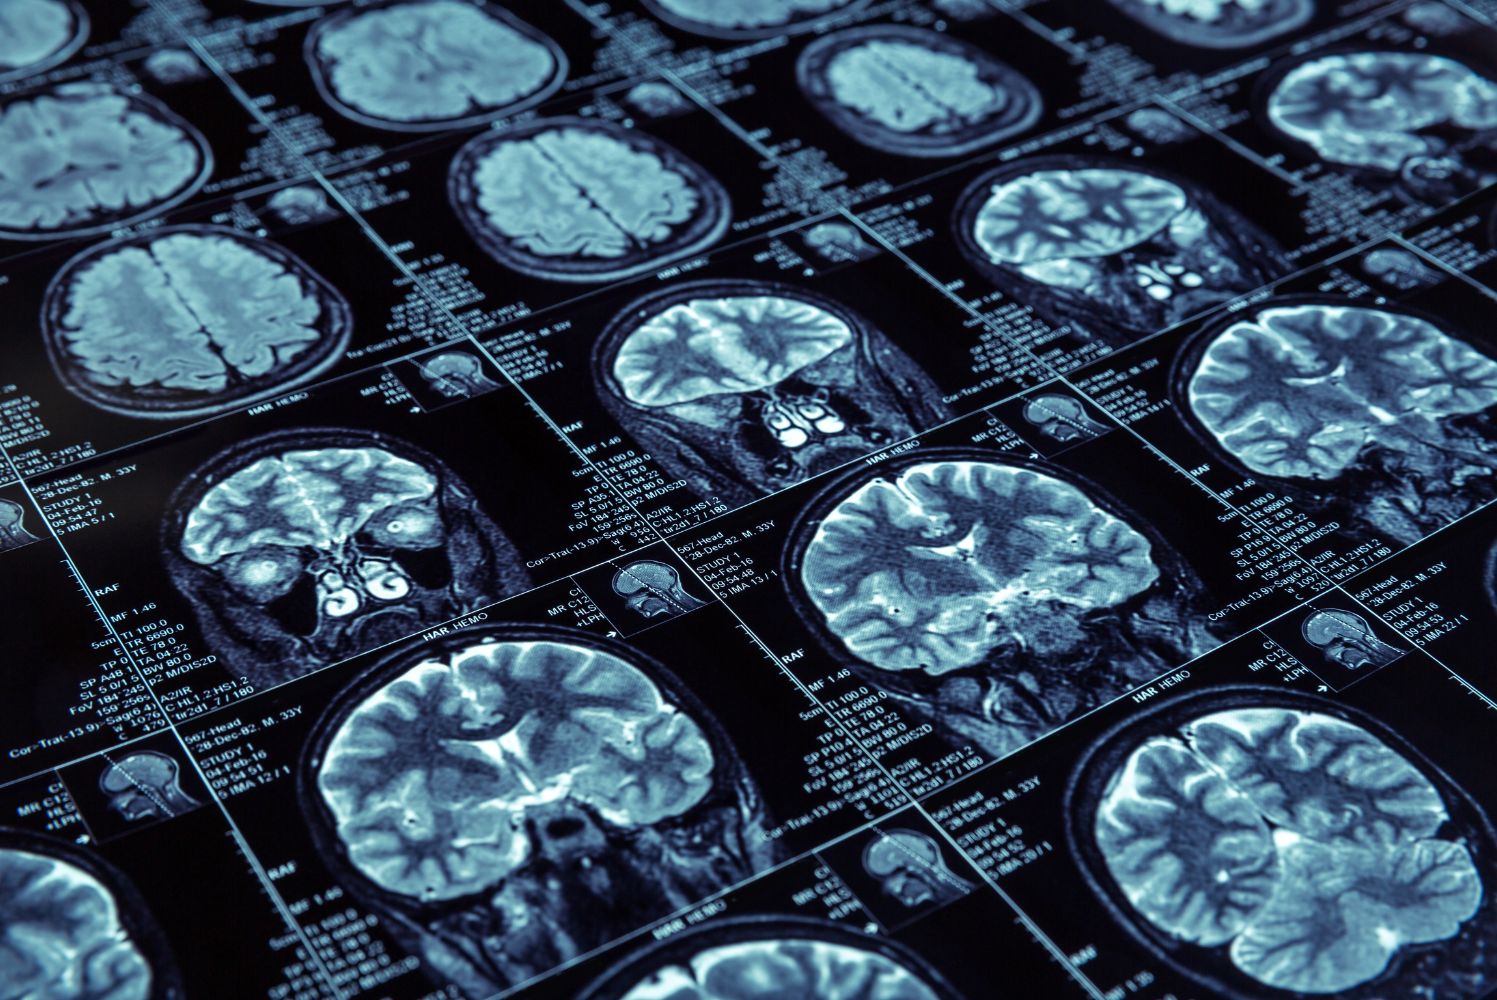 L’impact d’un implant cérébral sur la vie d’une patiente souffrant d’épilepsie et de TOC.